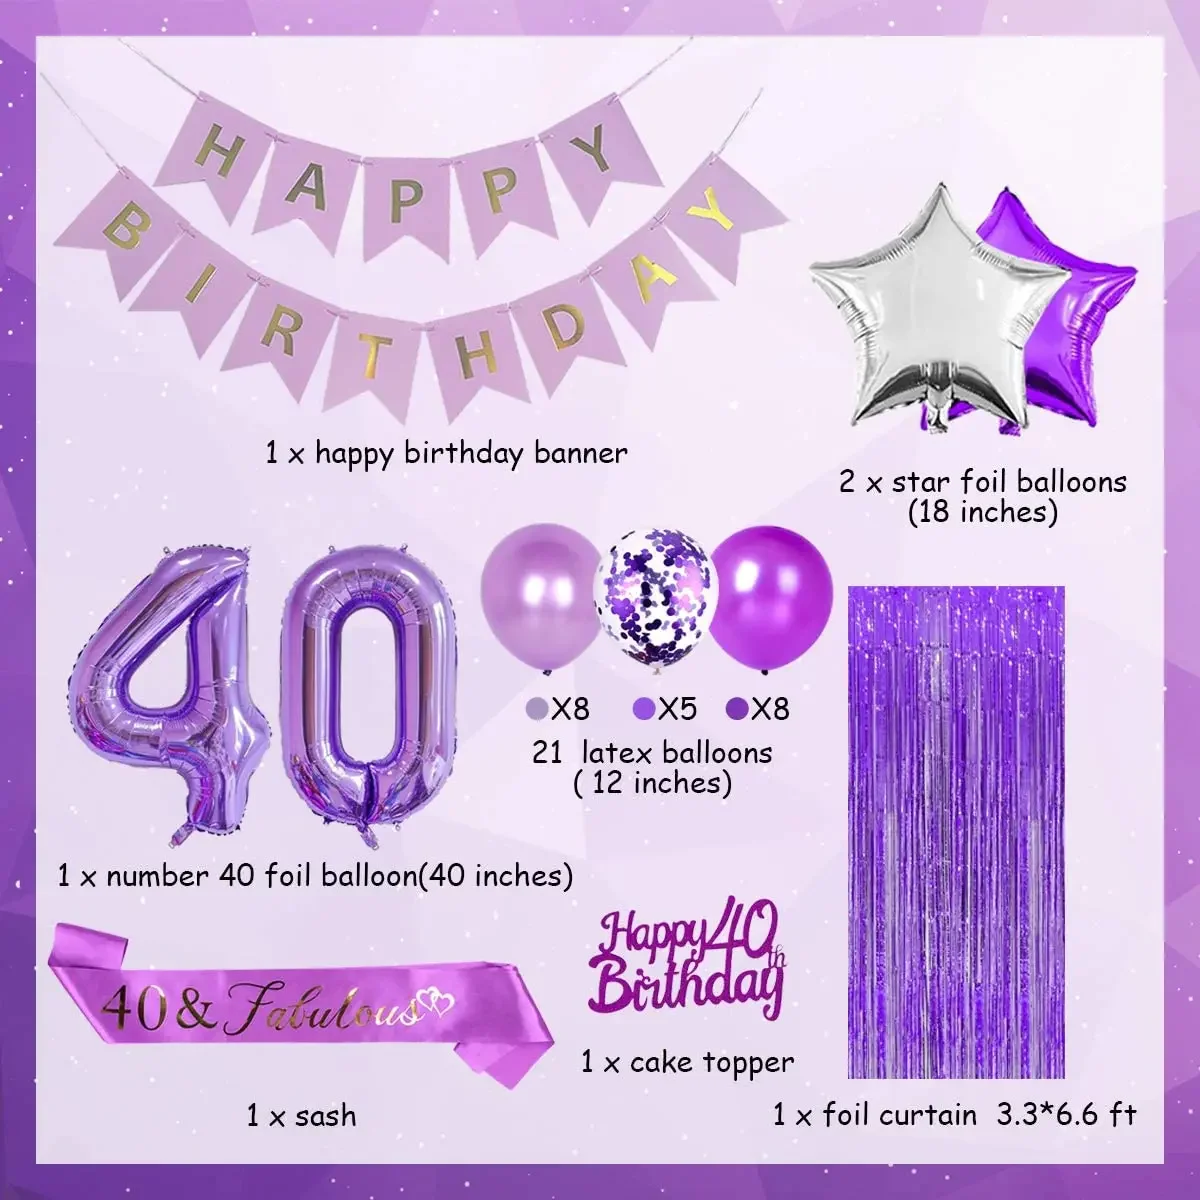 

Пурпурные украшения для вечеринки в честь 40-го дня рождения для женщин, с пурпурными цифрами, 40 воздушных шаров, топпер для торта в честь 40-го дня рождения, сказочный пояс